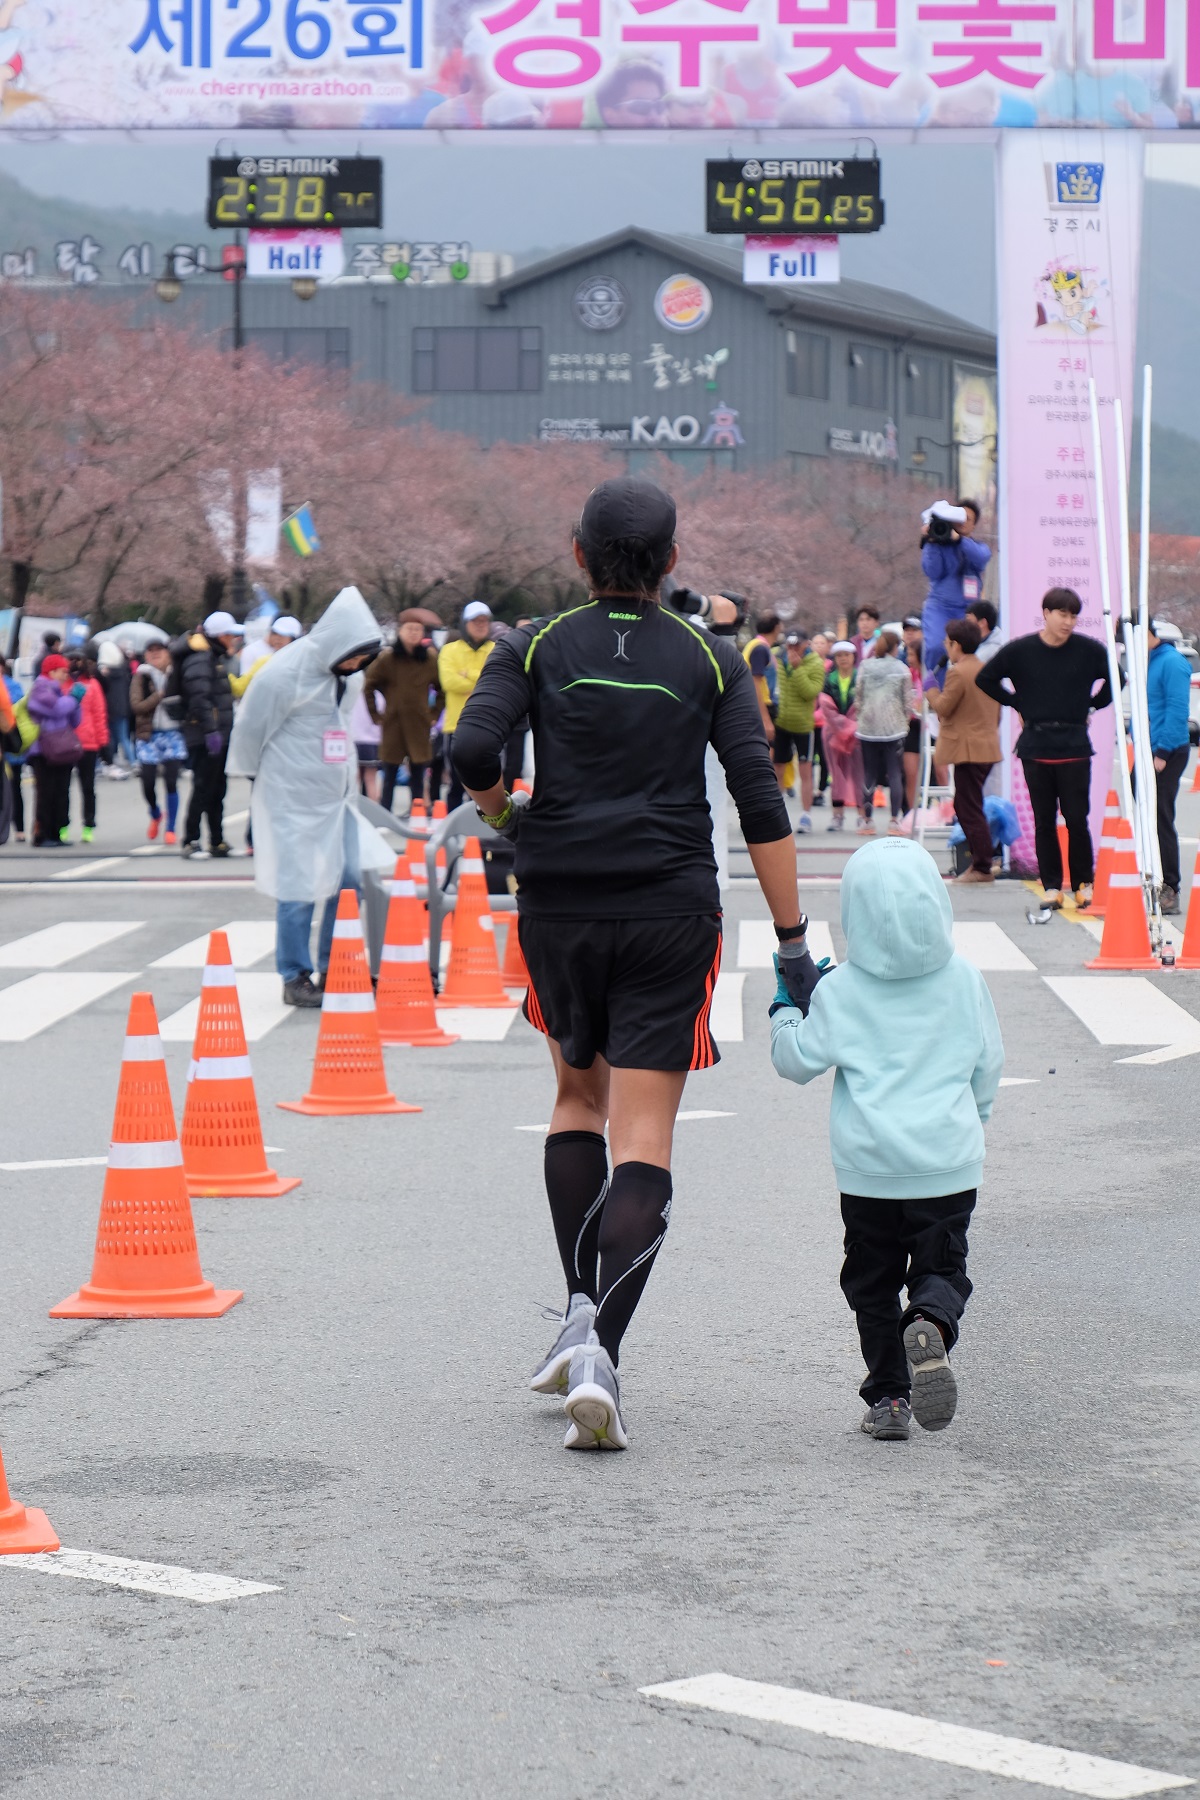 Gyeongju Cherry Blossom Marathon with Gab